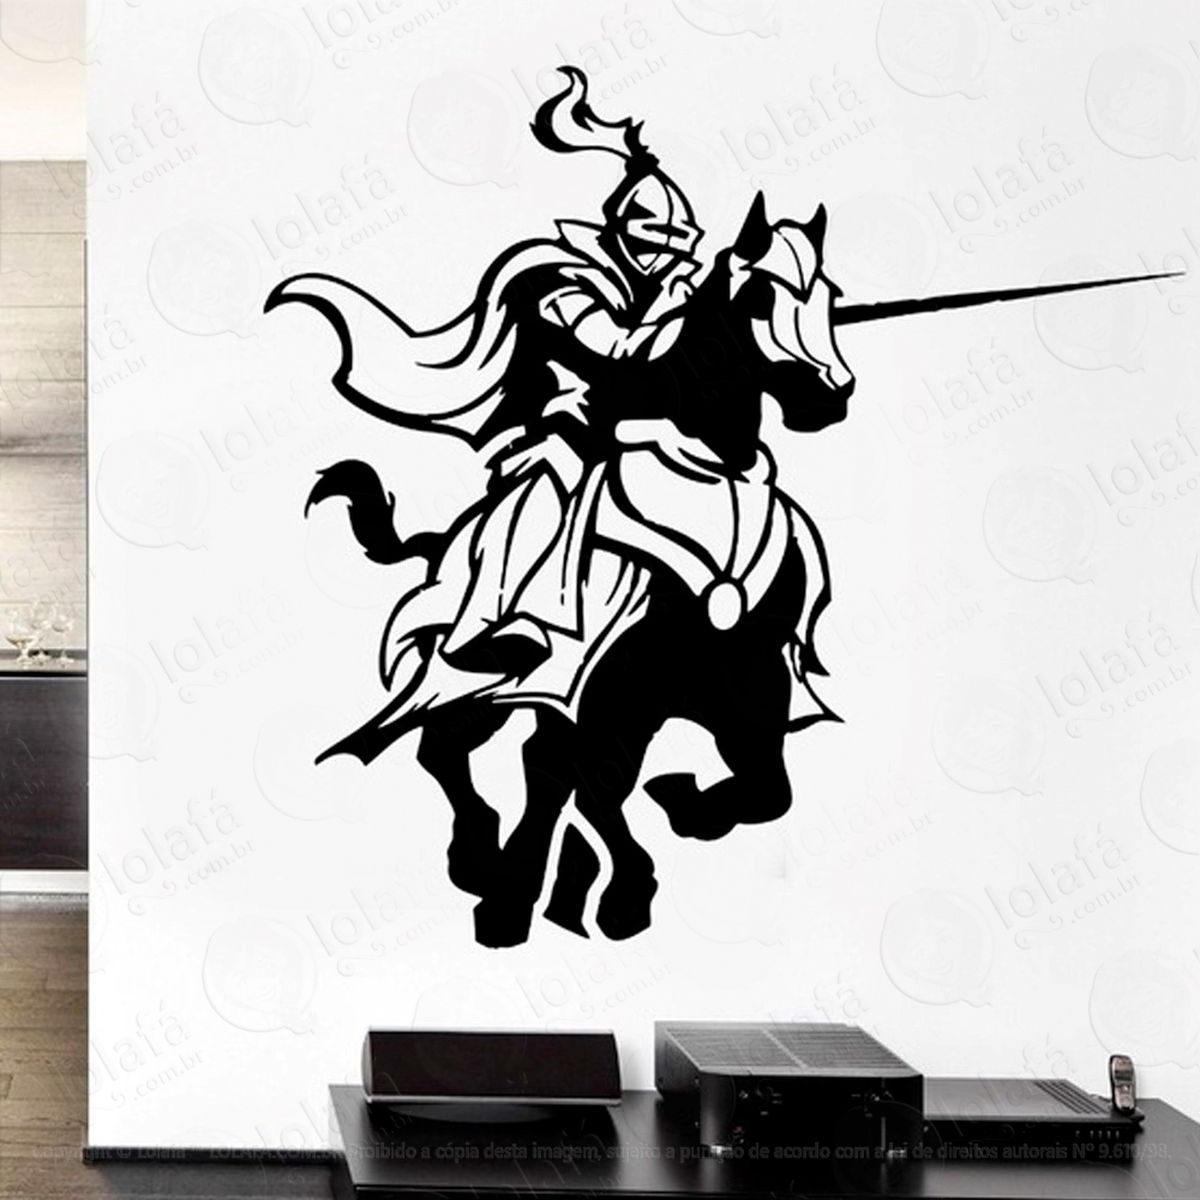 cavaleiro medieval adesivo de parede decorativo para casa, sala, quarto e vidro - mod:21